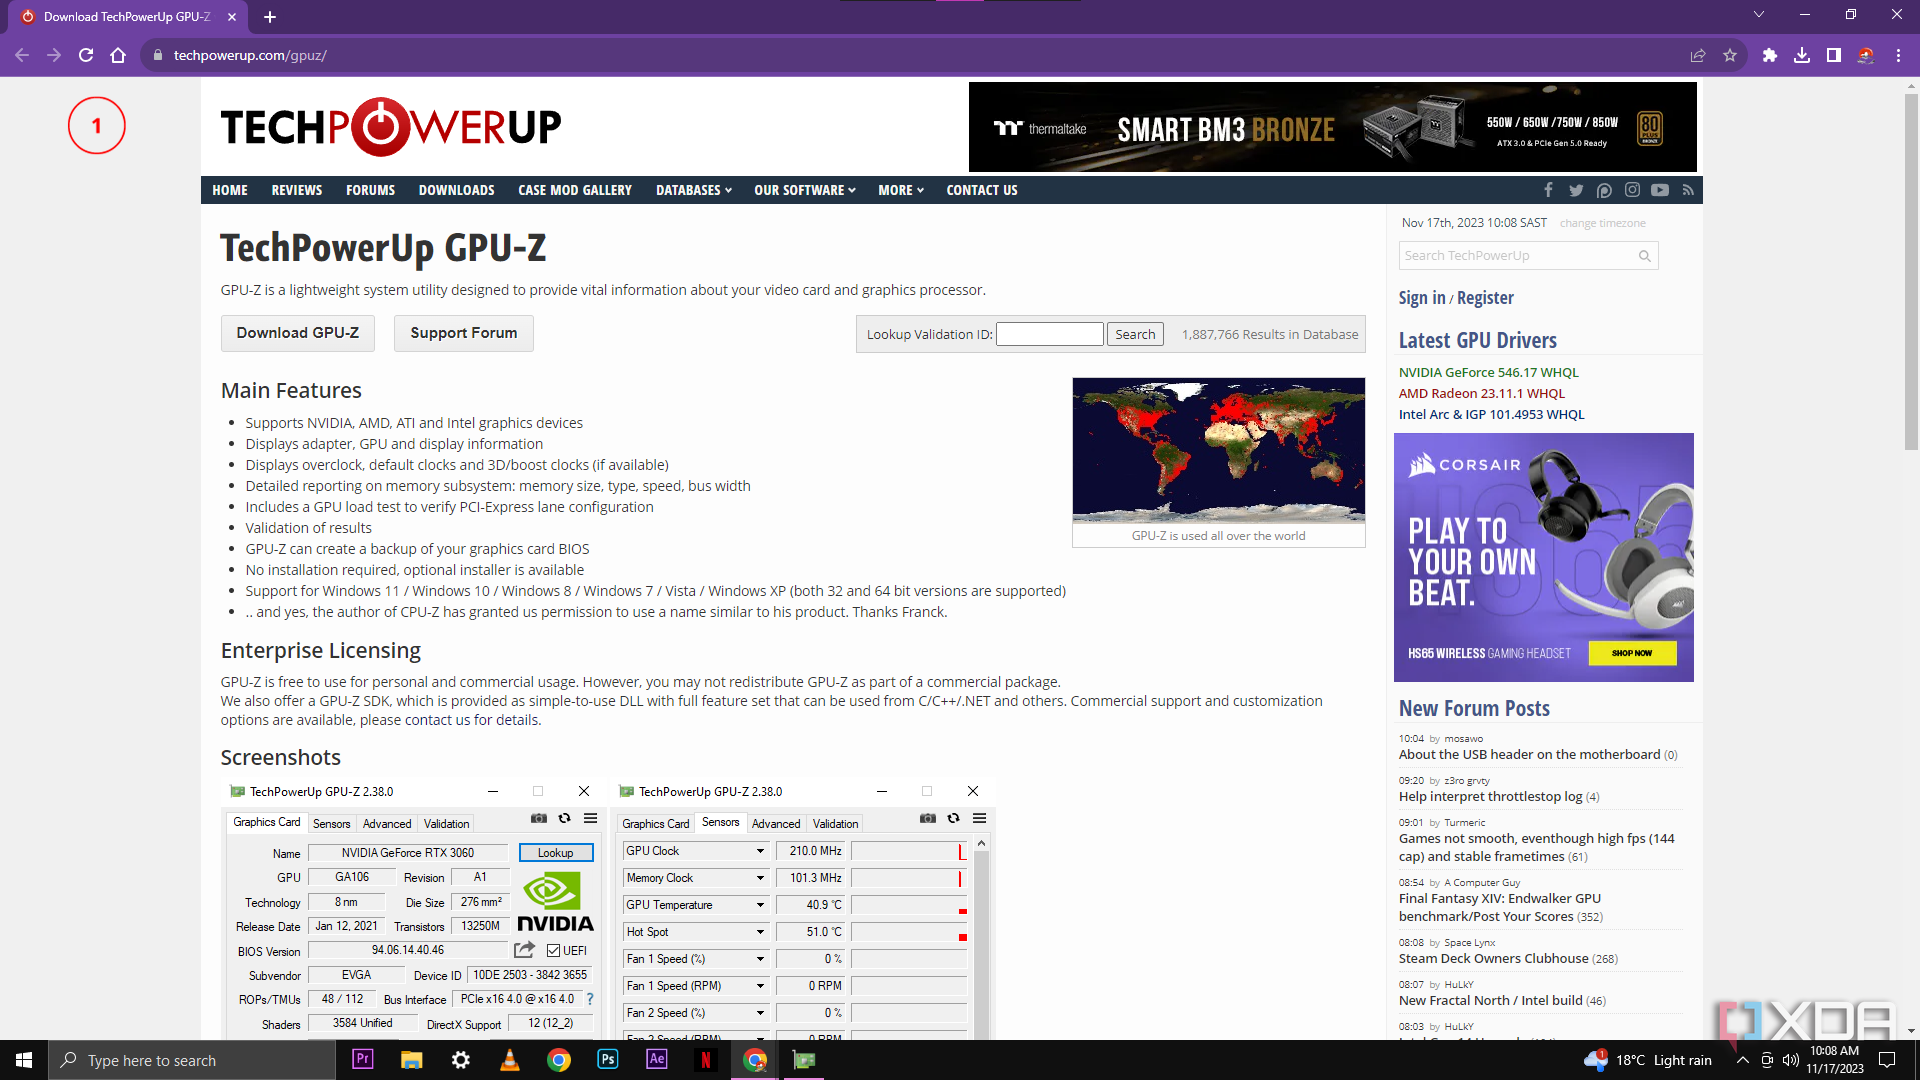 Снимок экрана веб-сайта TechPowerUp GPU-Z, на котором показаны основные функции программного обеспечения, включая поддержку графических устройств NVIDIA, AMD и ATI, подробные отчеты о подсистеме памяти и отсутствие требований к установке для использования.  На заднем плане видна карта мира, показывающая глобальное использование GPU-Z.